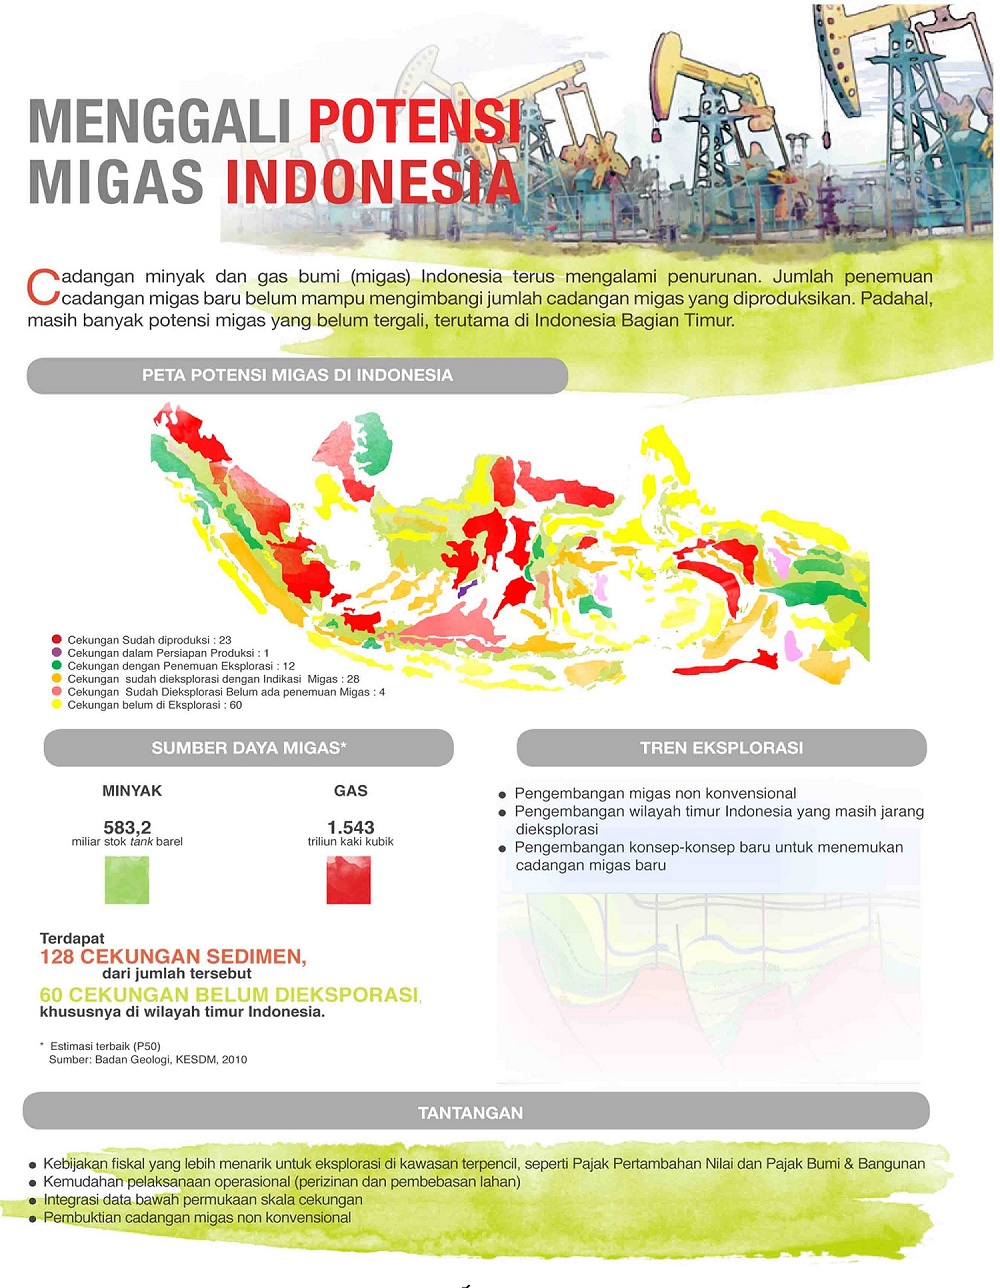 Menggali Potensi Migas Indonesia